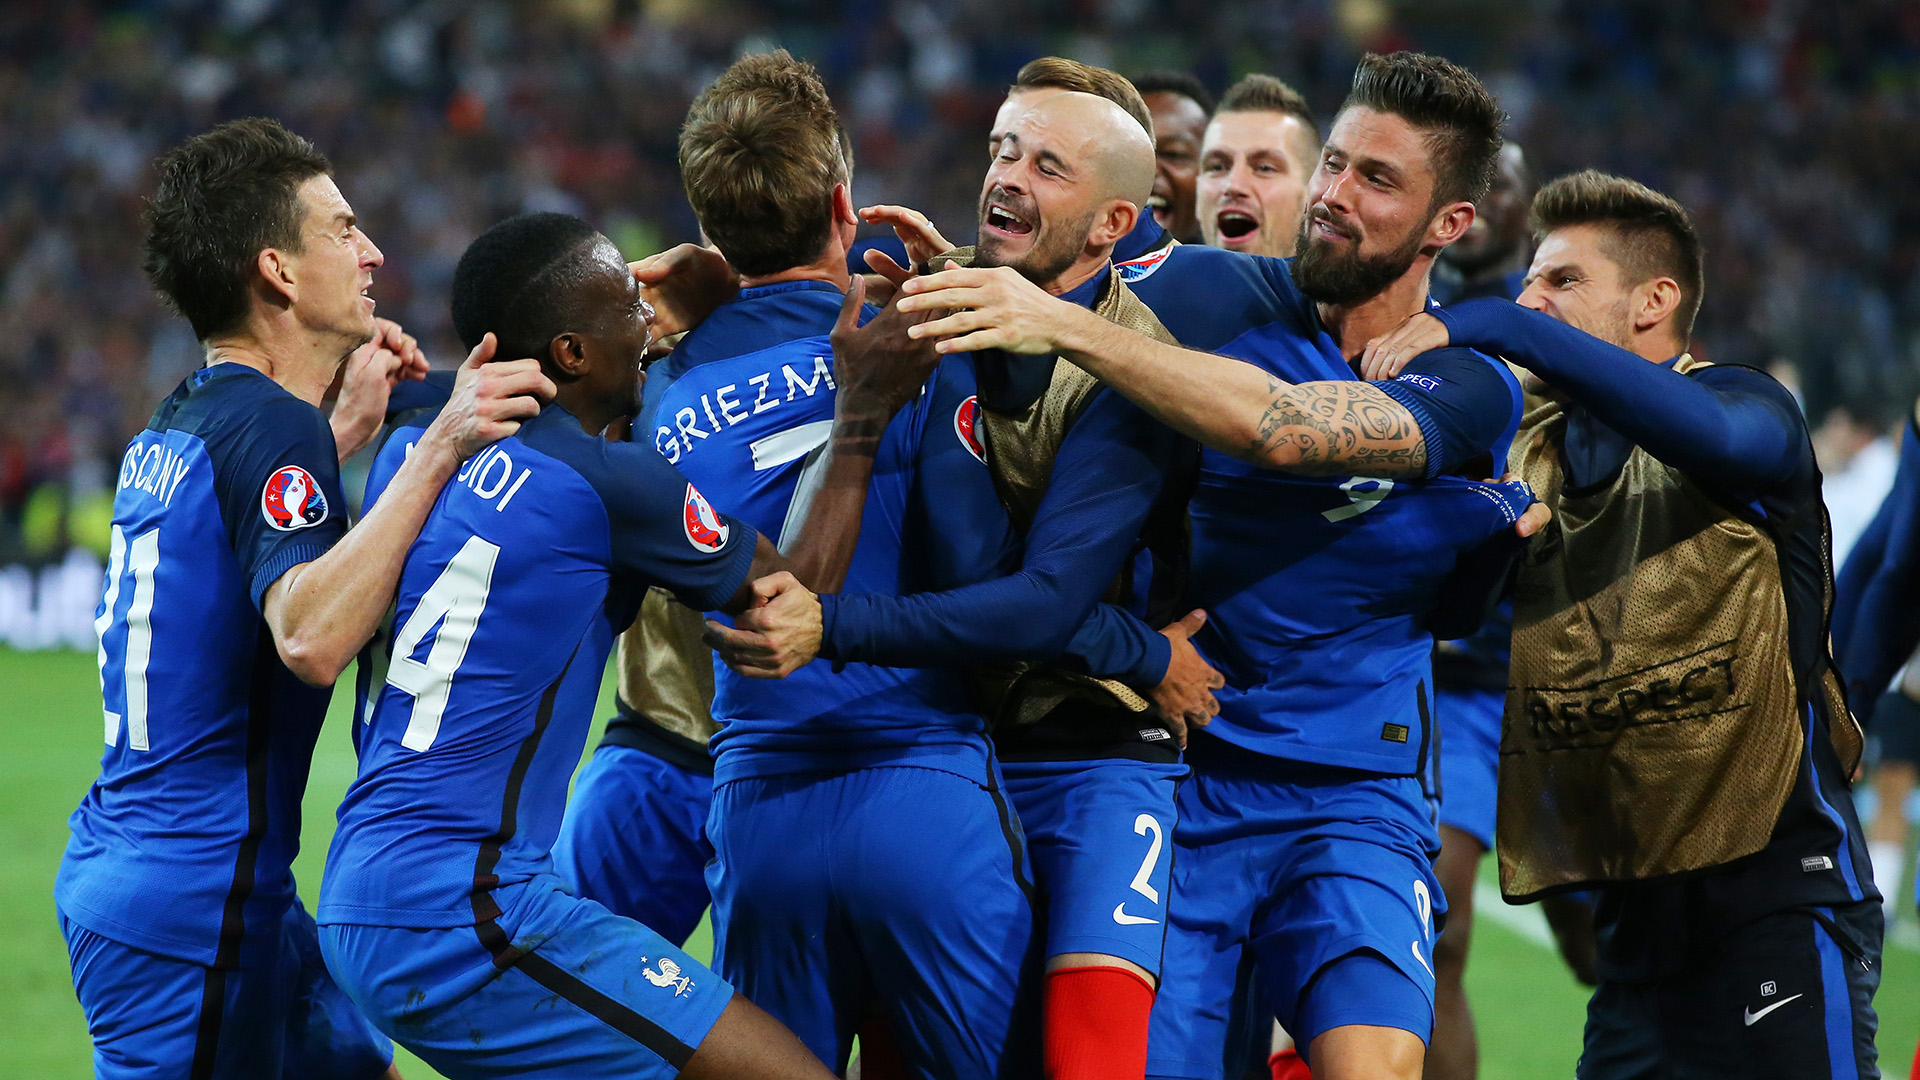   بالفيديو|| فرنسا تنتفض وتحرز الهدف الثانى والثالث لتتفوق بثلاثة مقابل هدفين